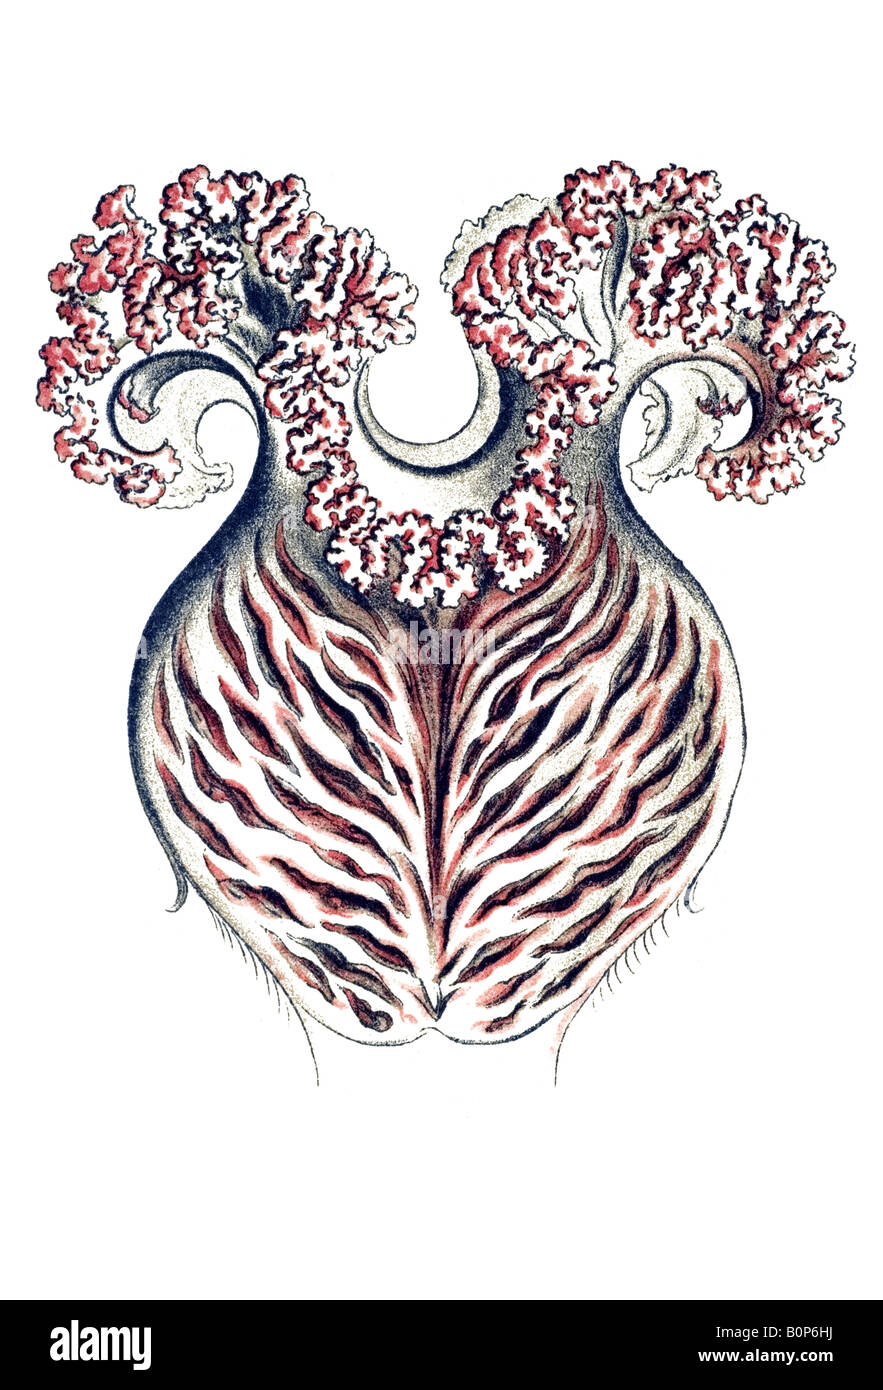 Anthomedusae Name Tiara pileata, stomach, Haeckel, art nouveau 20th century Europe Stock Photo